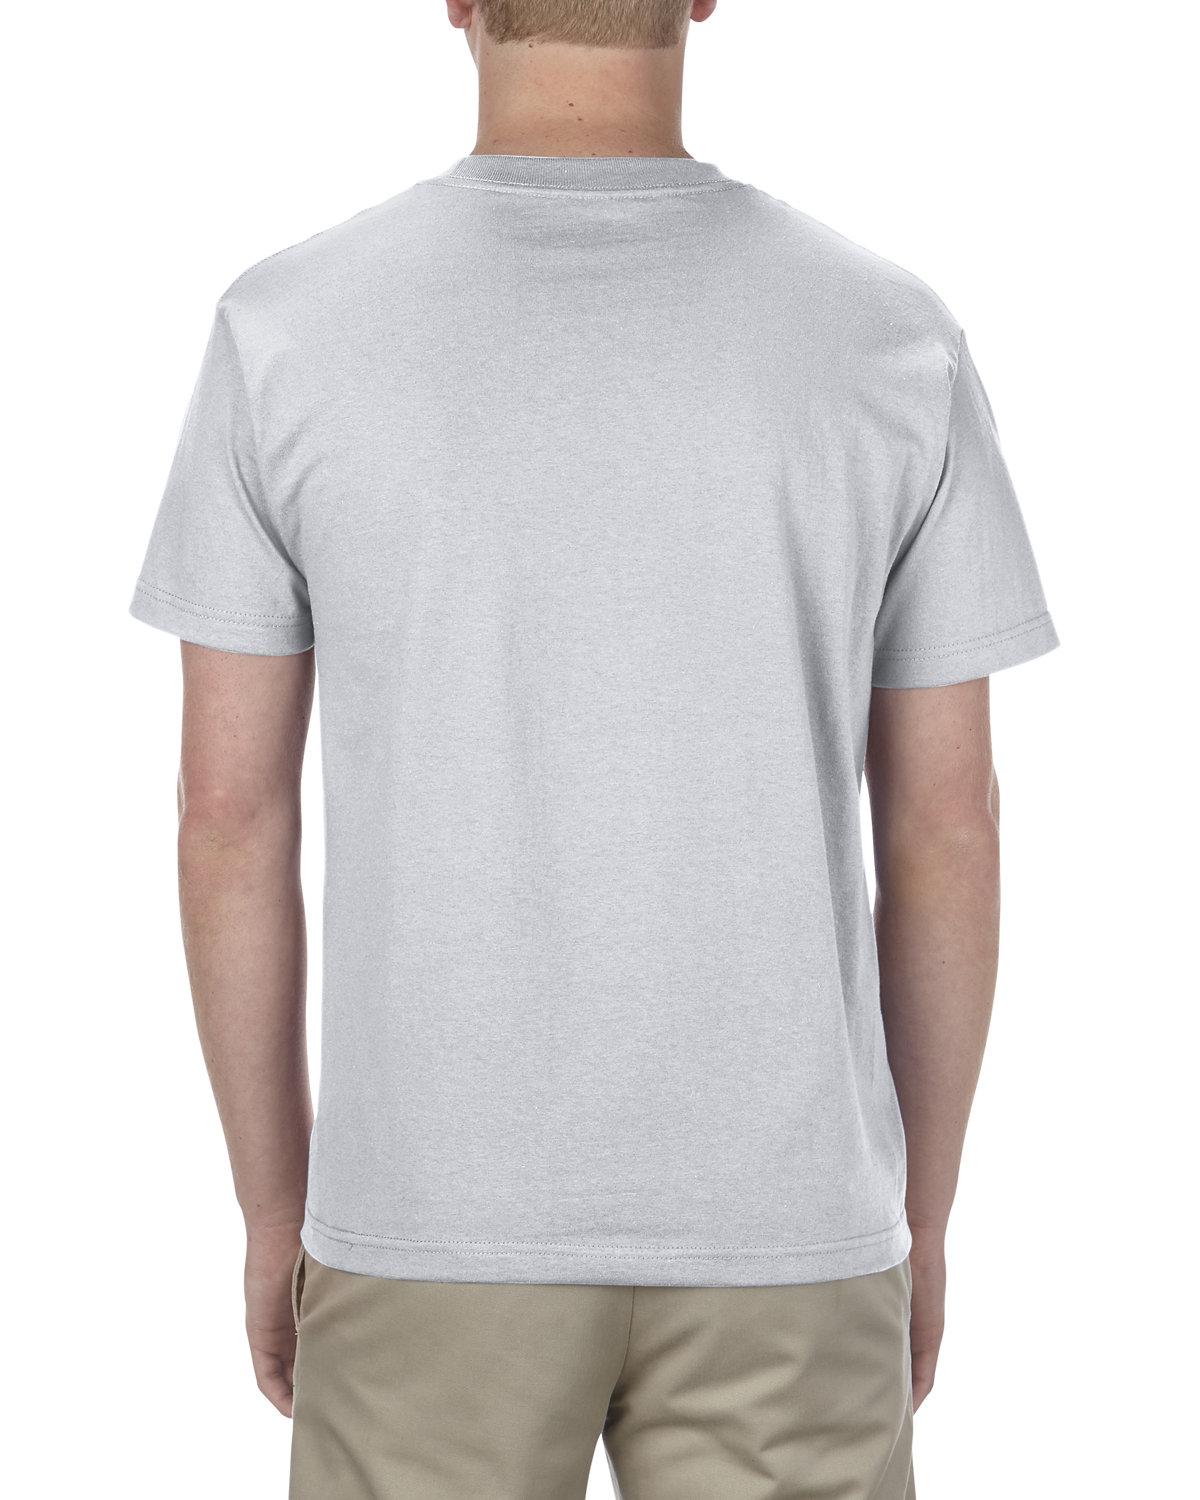 American Apparel Unisex Heavyweight Cotton T-Shirt | alphabroder